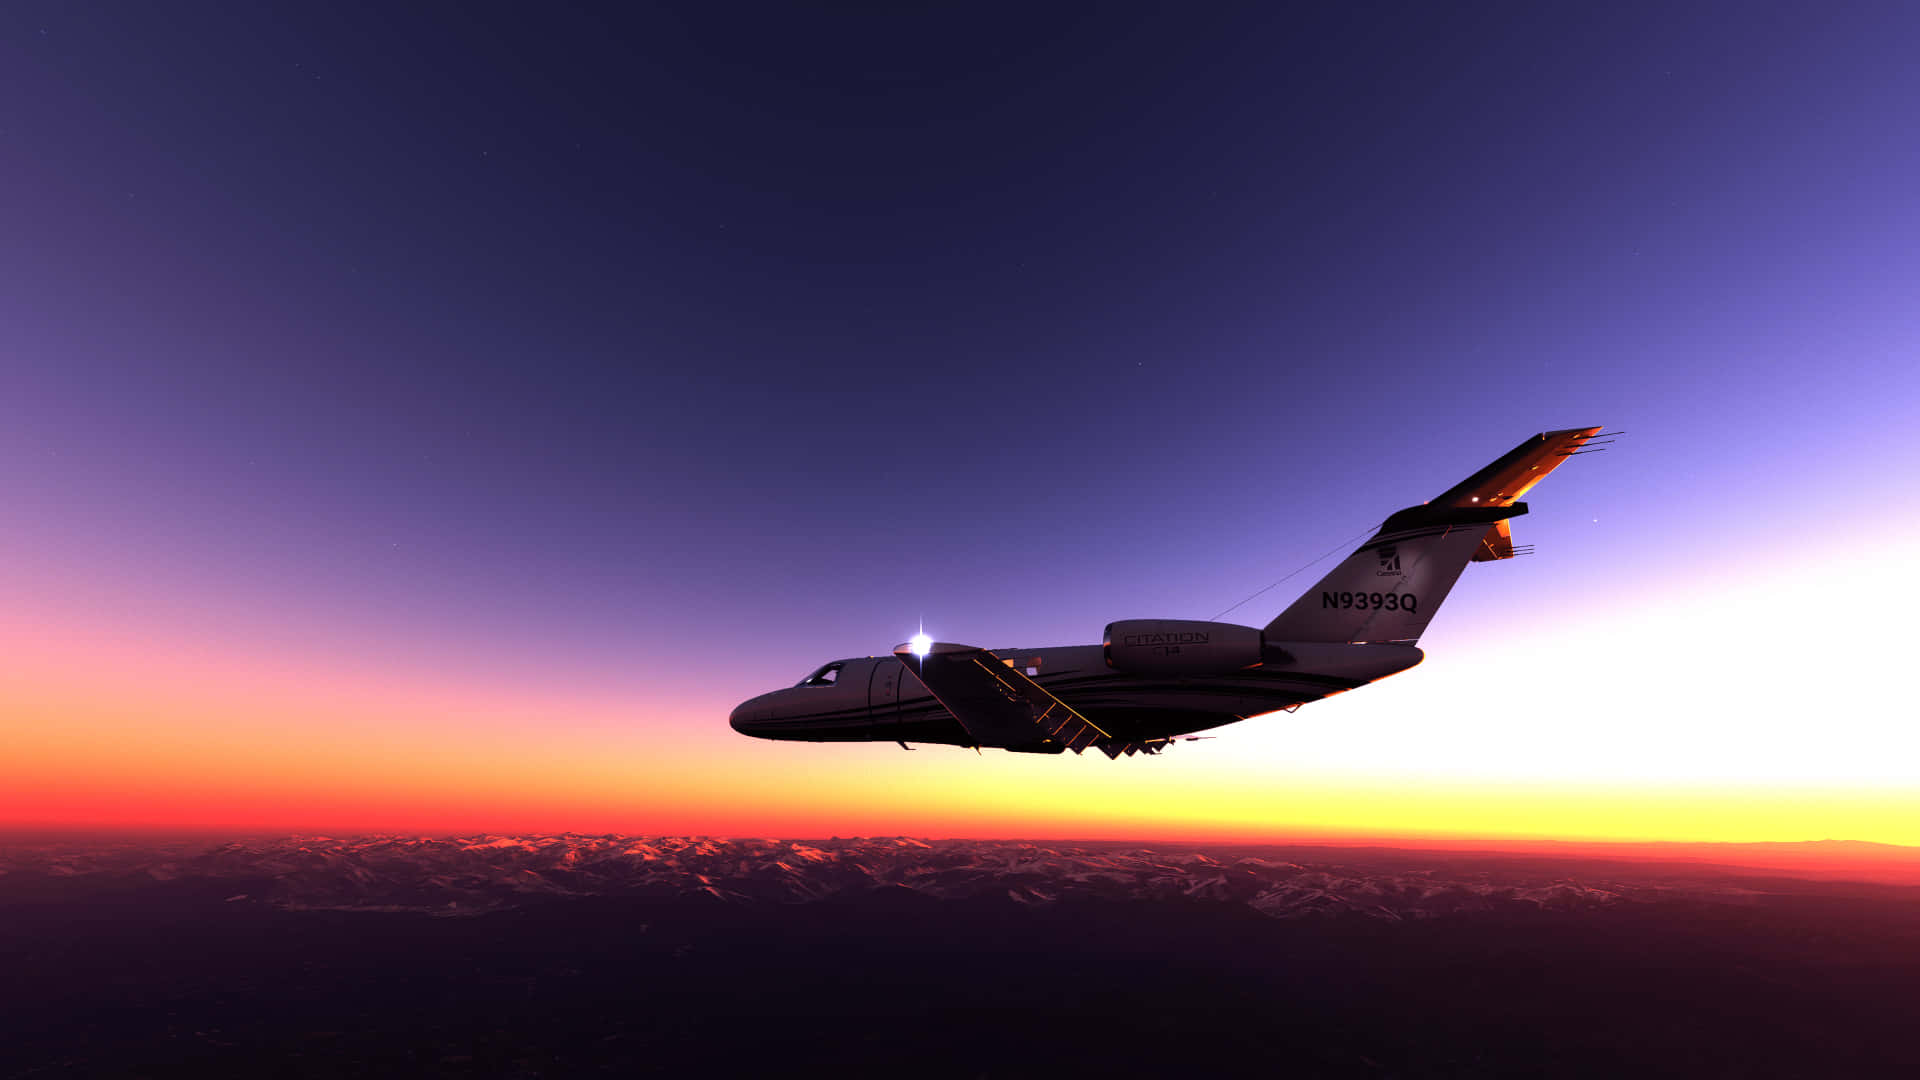 1920x1080microsoft Flight Simulator - Påbörja En Fantastisk Resa Med Realistisk Grafik.